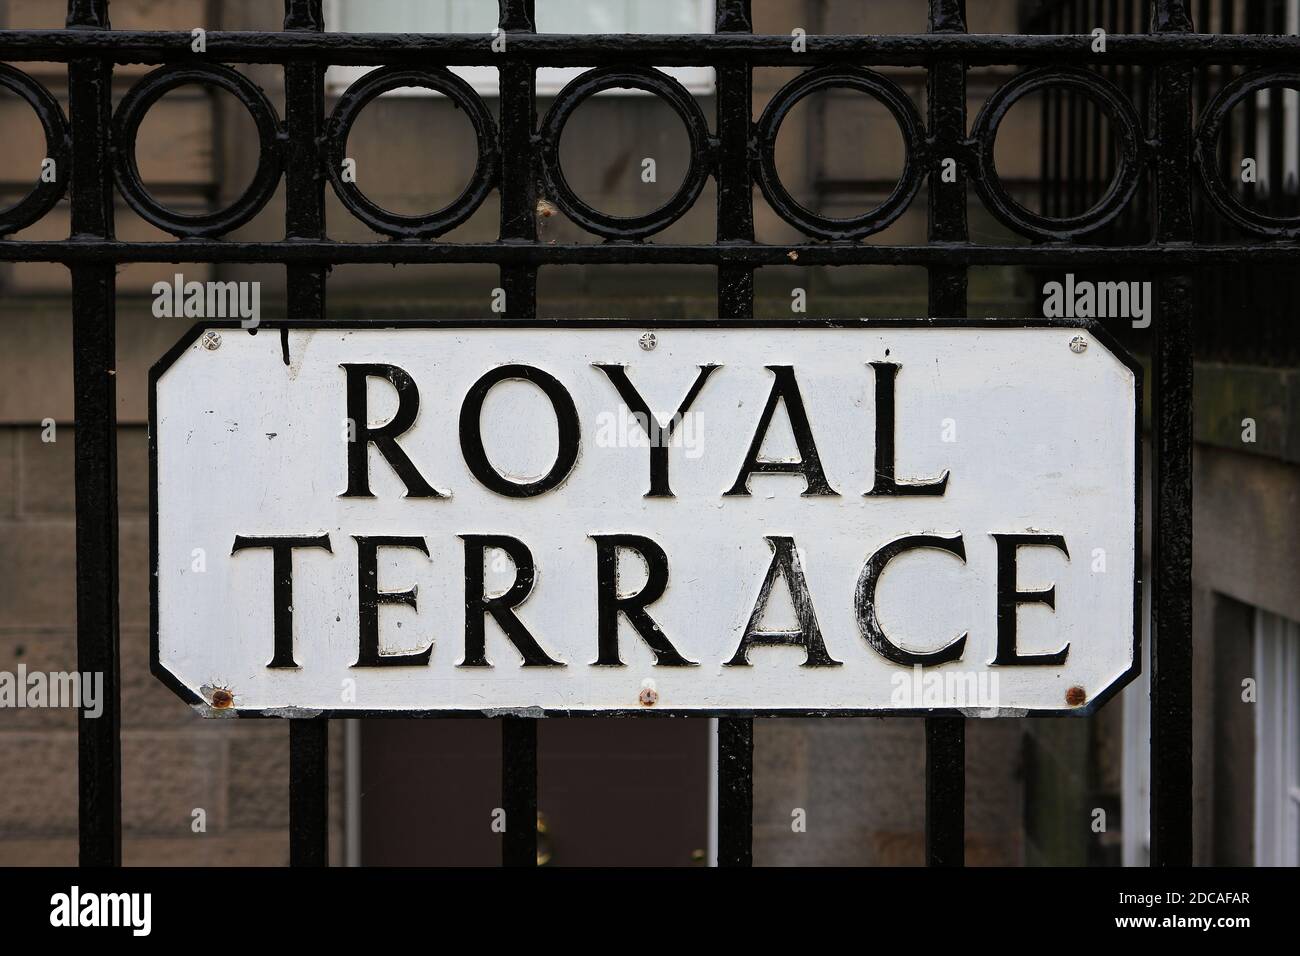 Royal Terrace, panneau de nom de rue d'Édimbourg attaché aux rambardes Banque D'Images